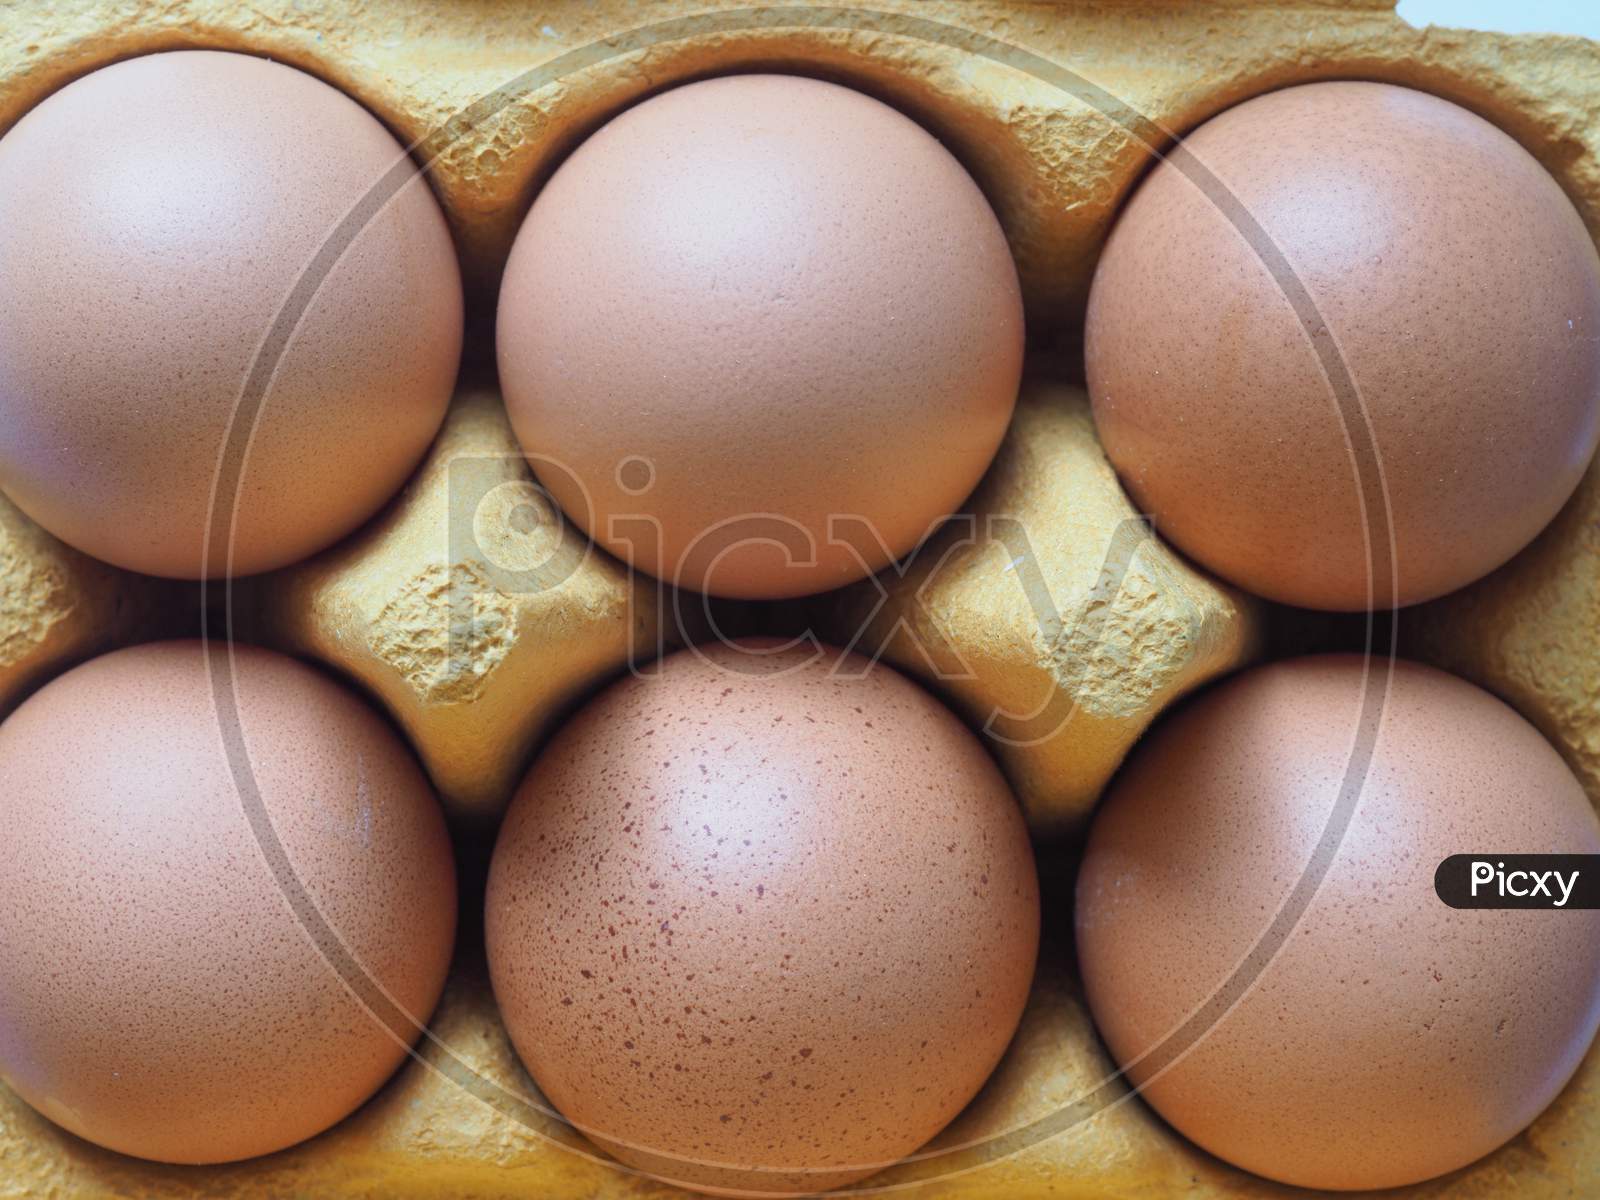 Eggs In Carton